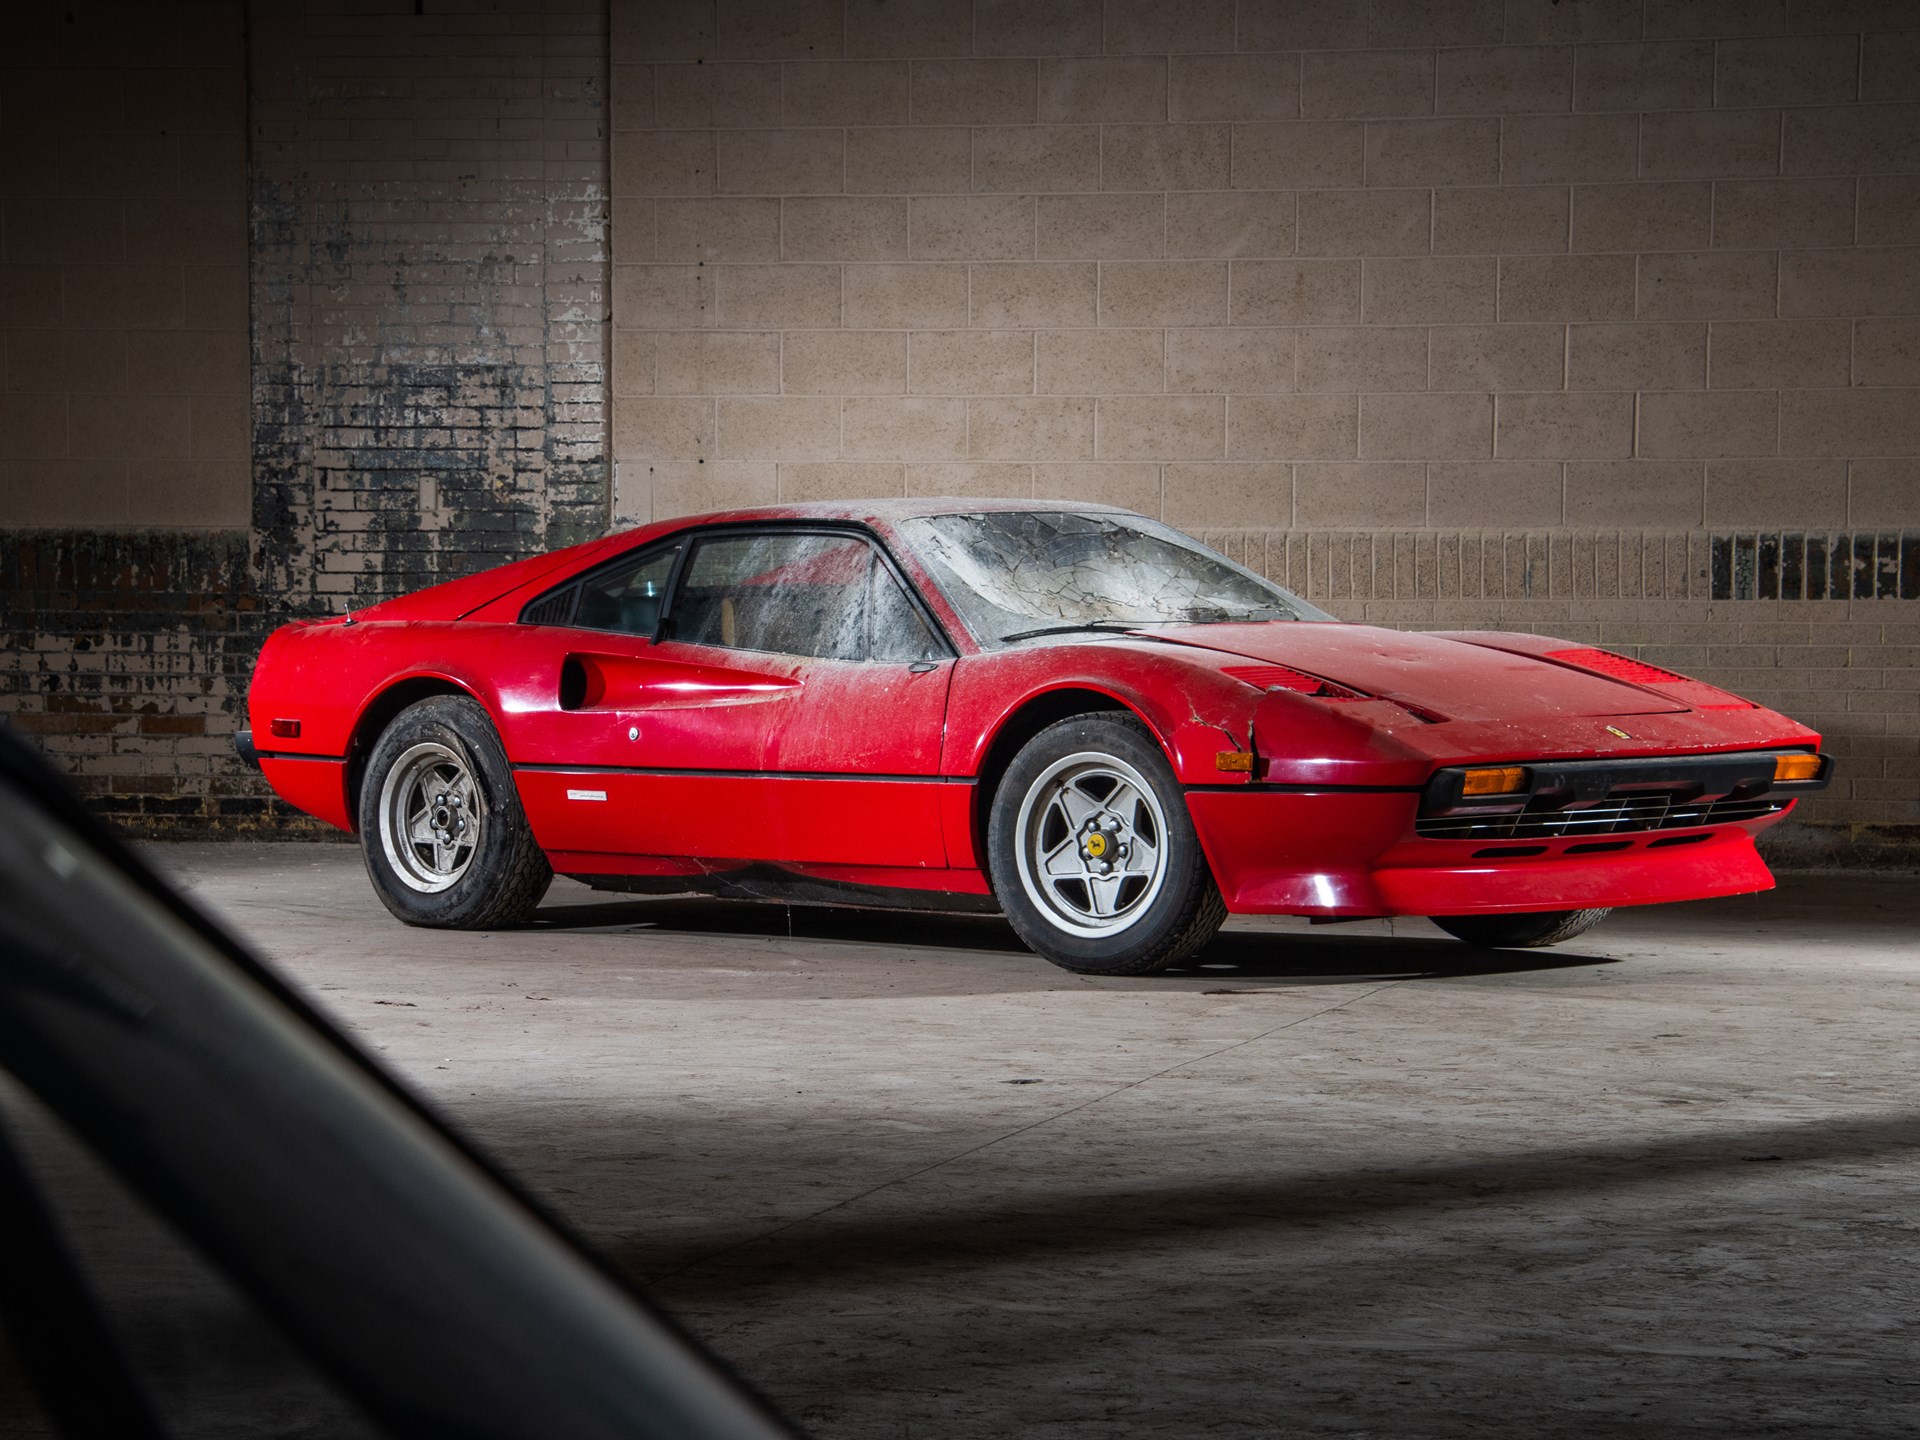 Ferraris abandonadas podem somar R$ 100 milhões em leilão; veja fotos